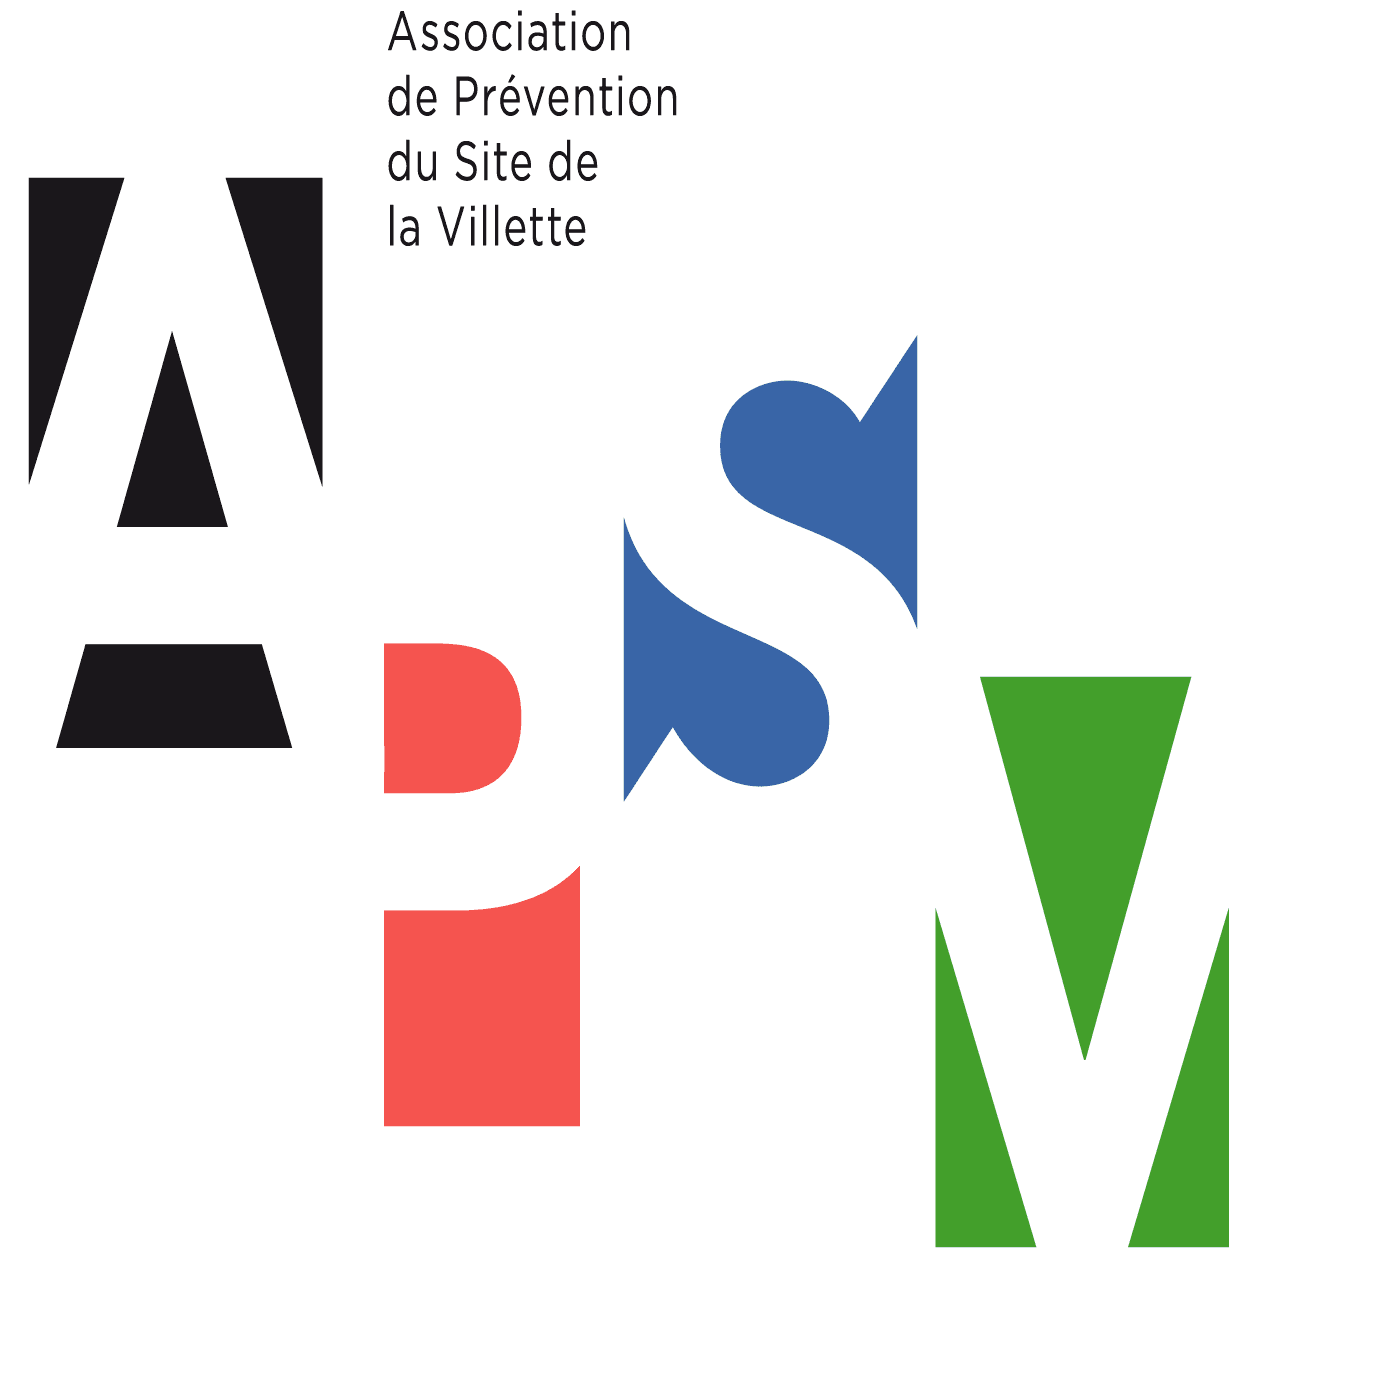 APSV – Association de Prévention du Site la Villette